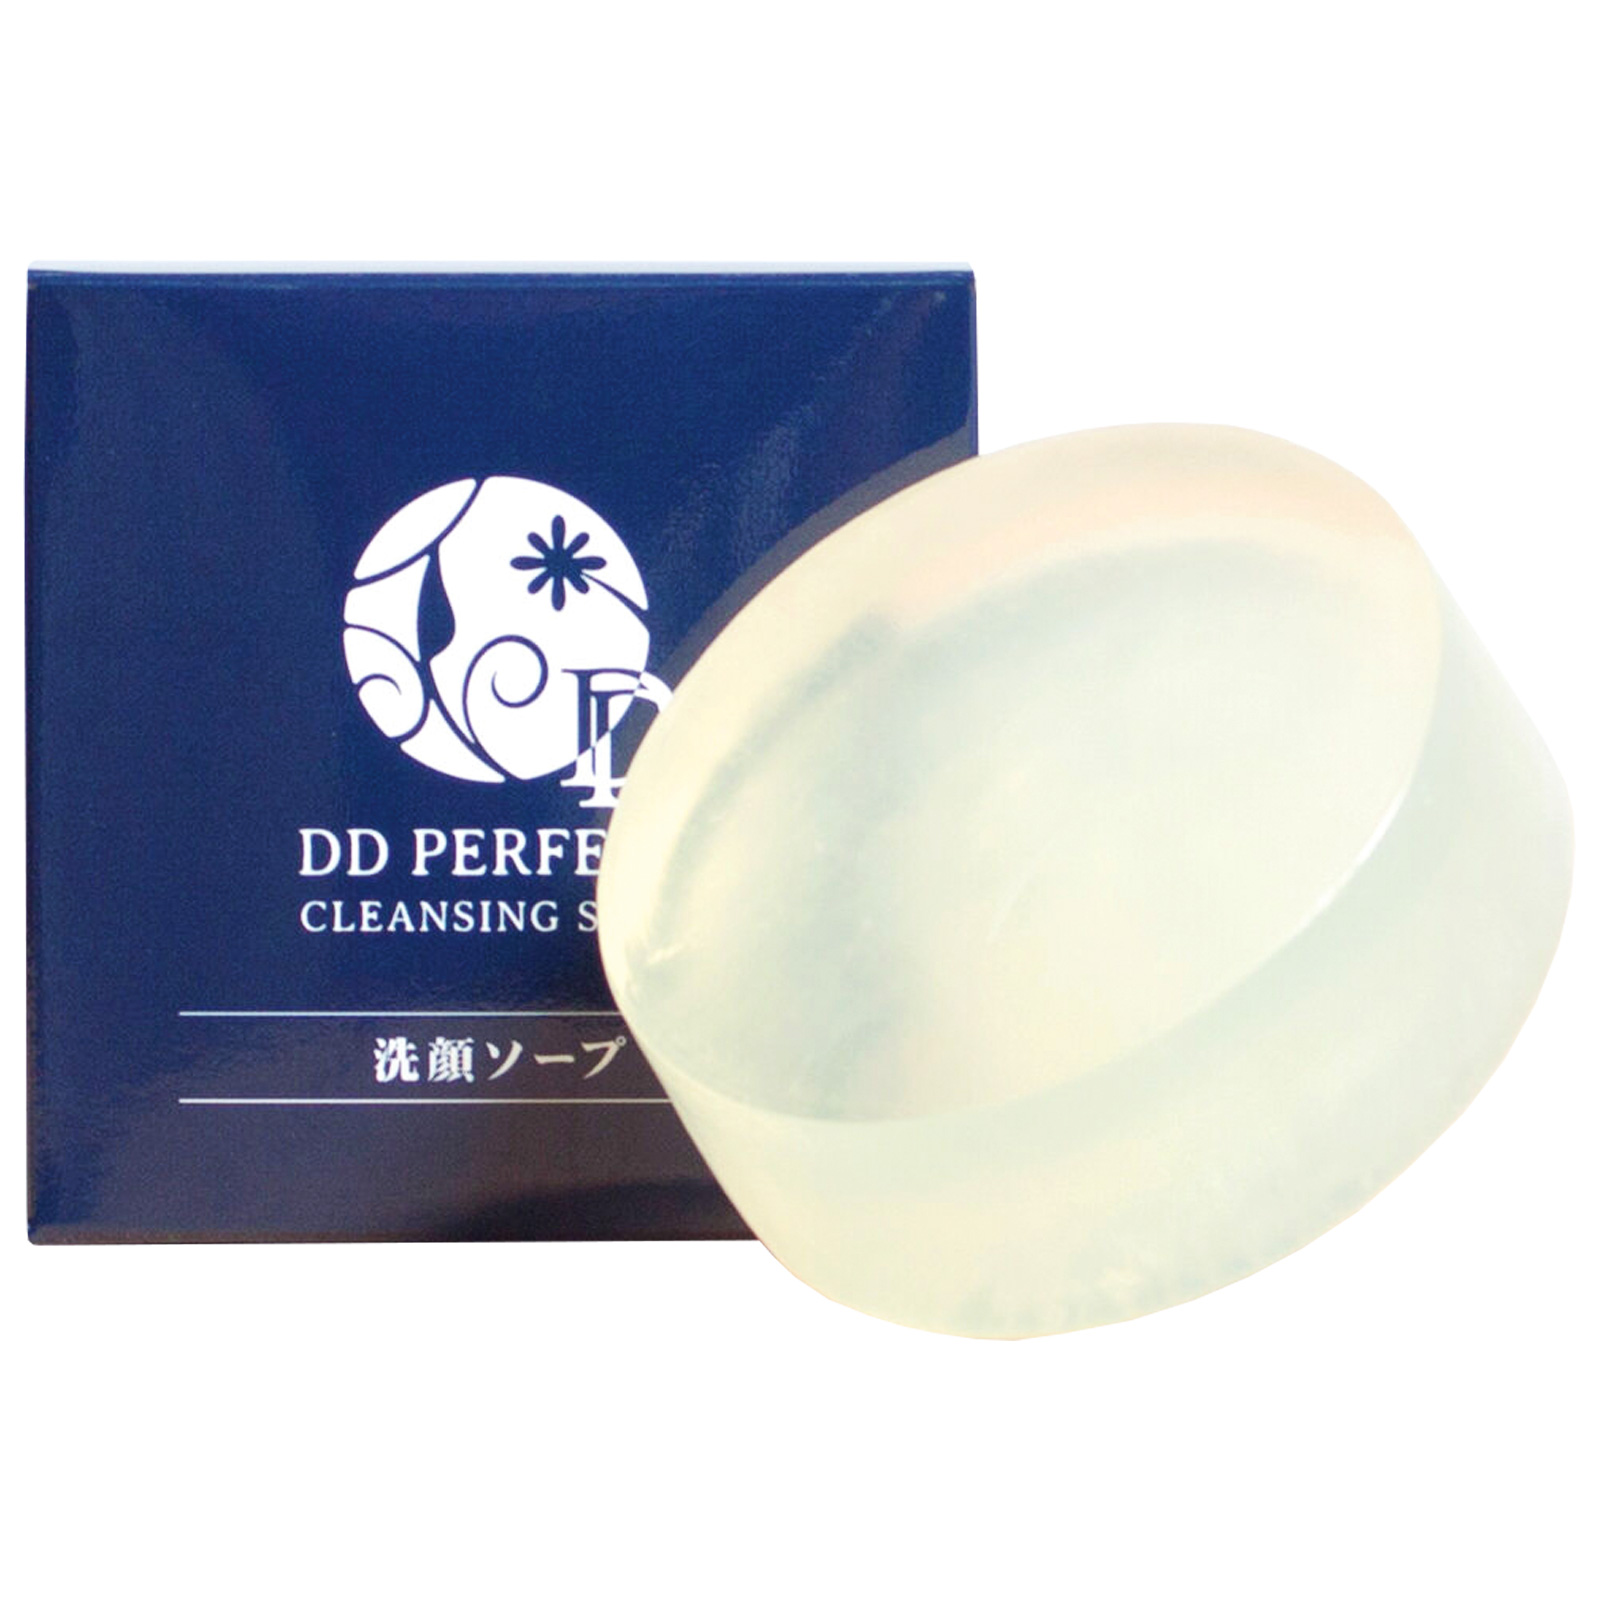 DD Perfect Cleansing Soap. Очищающее мыло для лица ДиДи Перфект, 100 г